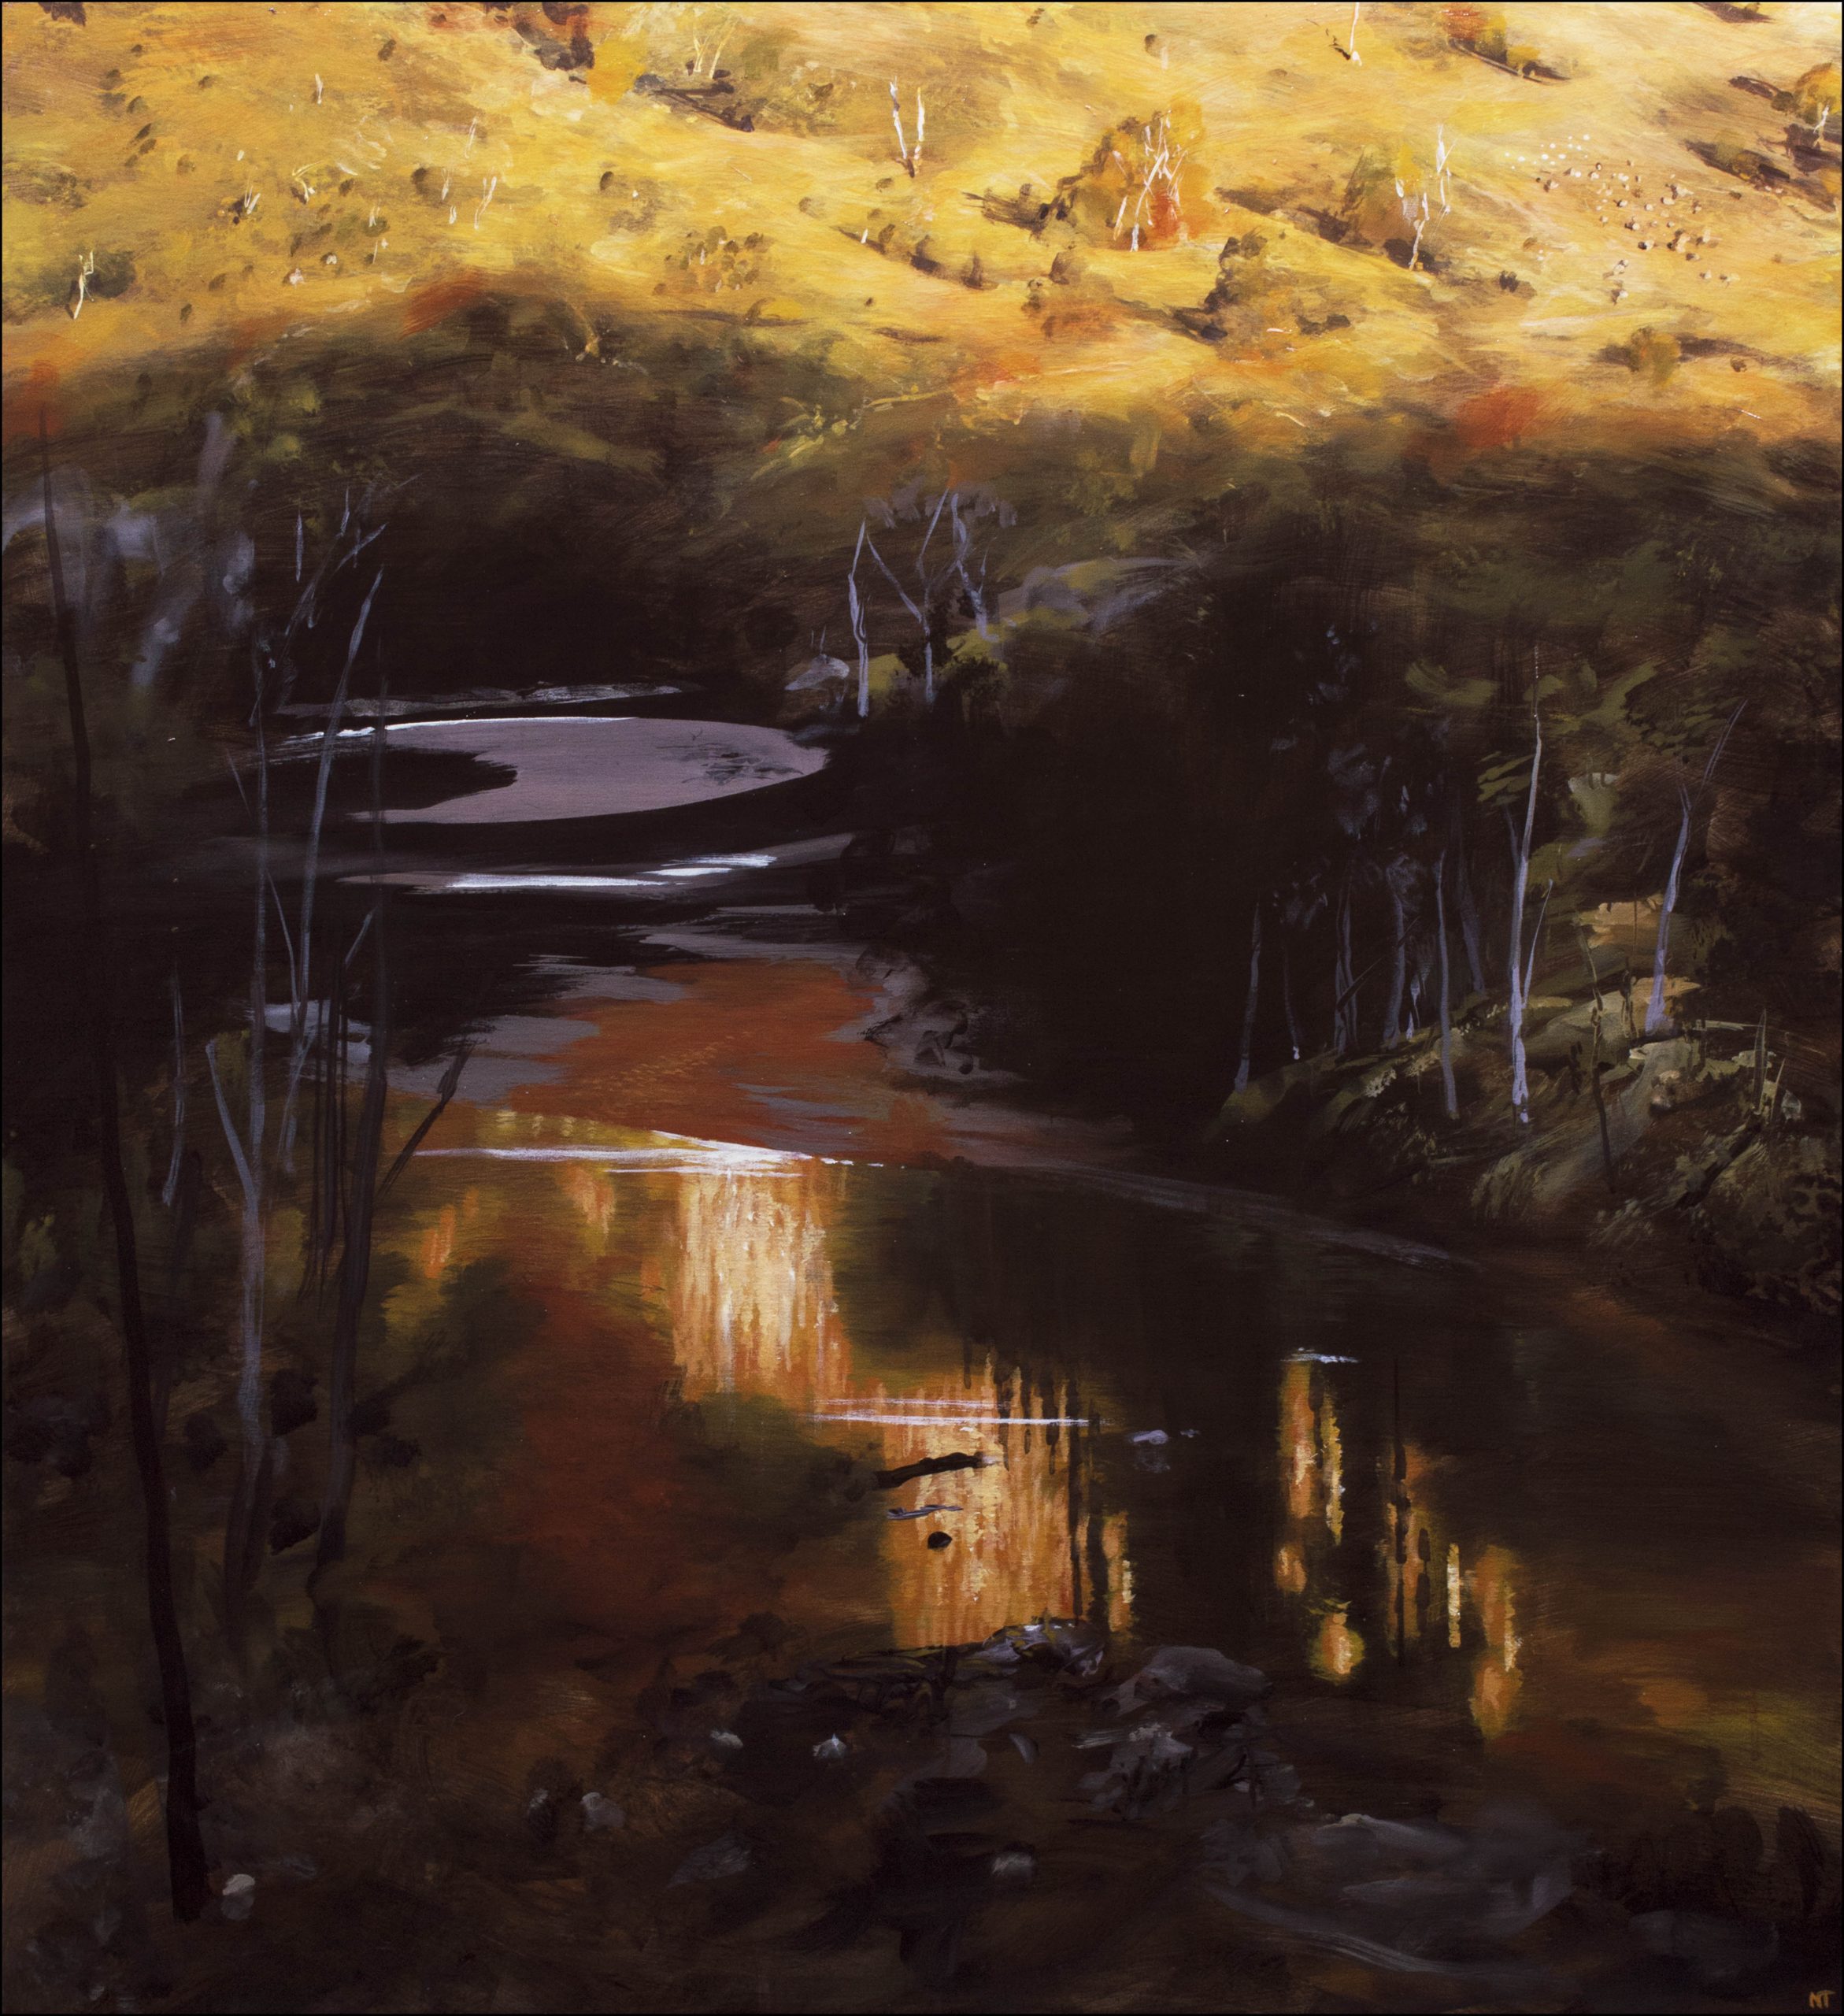 Neil Taylor 'Dusk On The Macquarie' acrylic on canvas 76 x 81cm $6,000